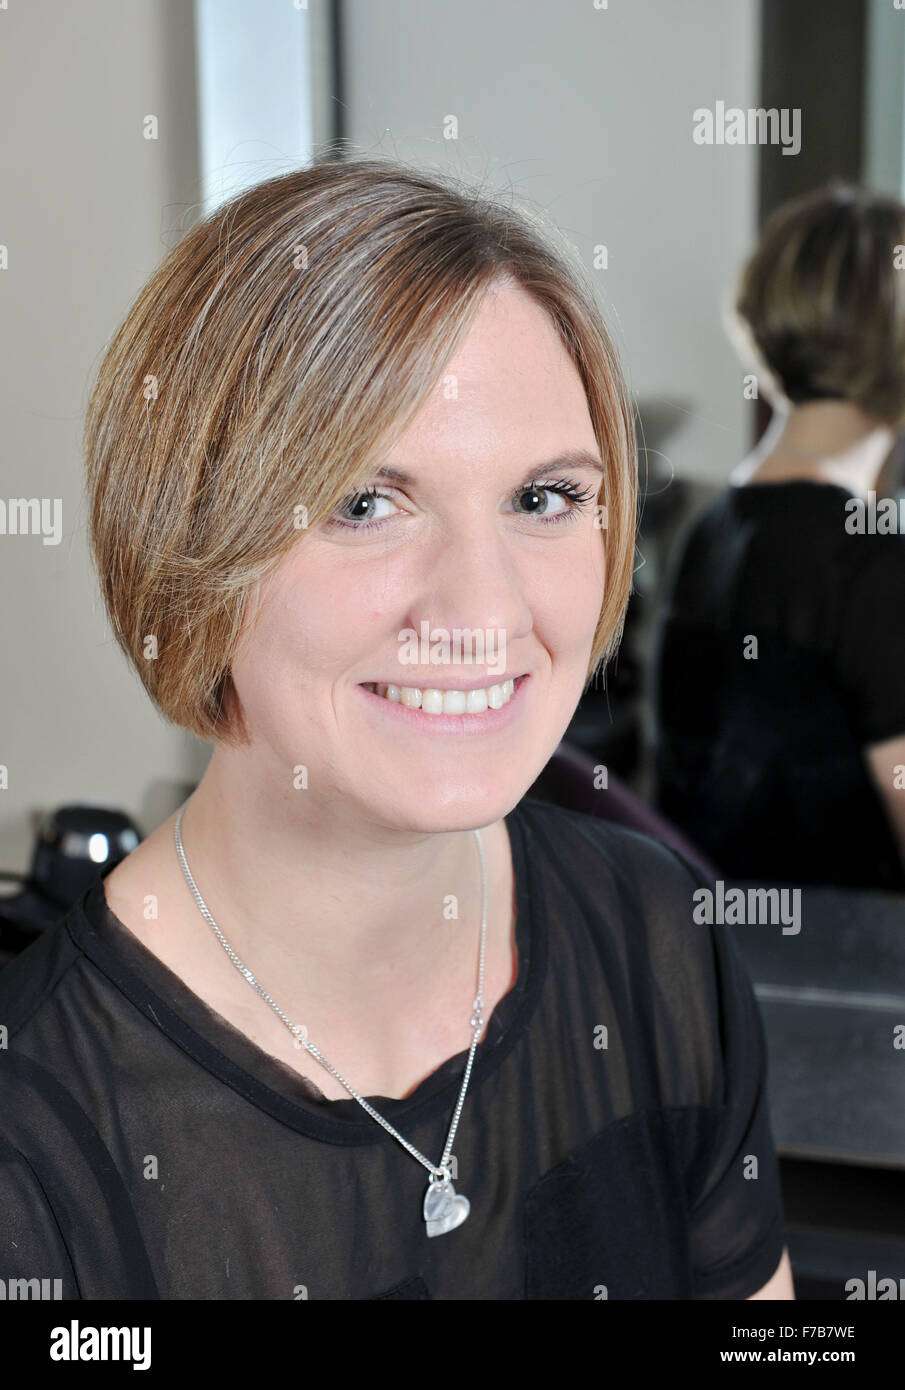 Porträt einer jungen Frau in ihren 20s Jahren mit kurzen Haaren in einem Friseursalon, nachdem es für wohltätige Zwecke geschnitten wurde Stockfoto